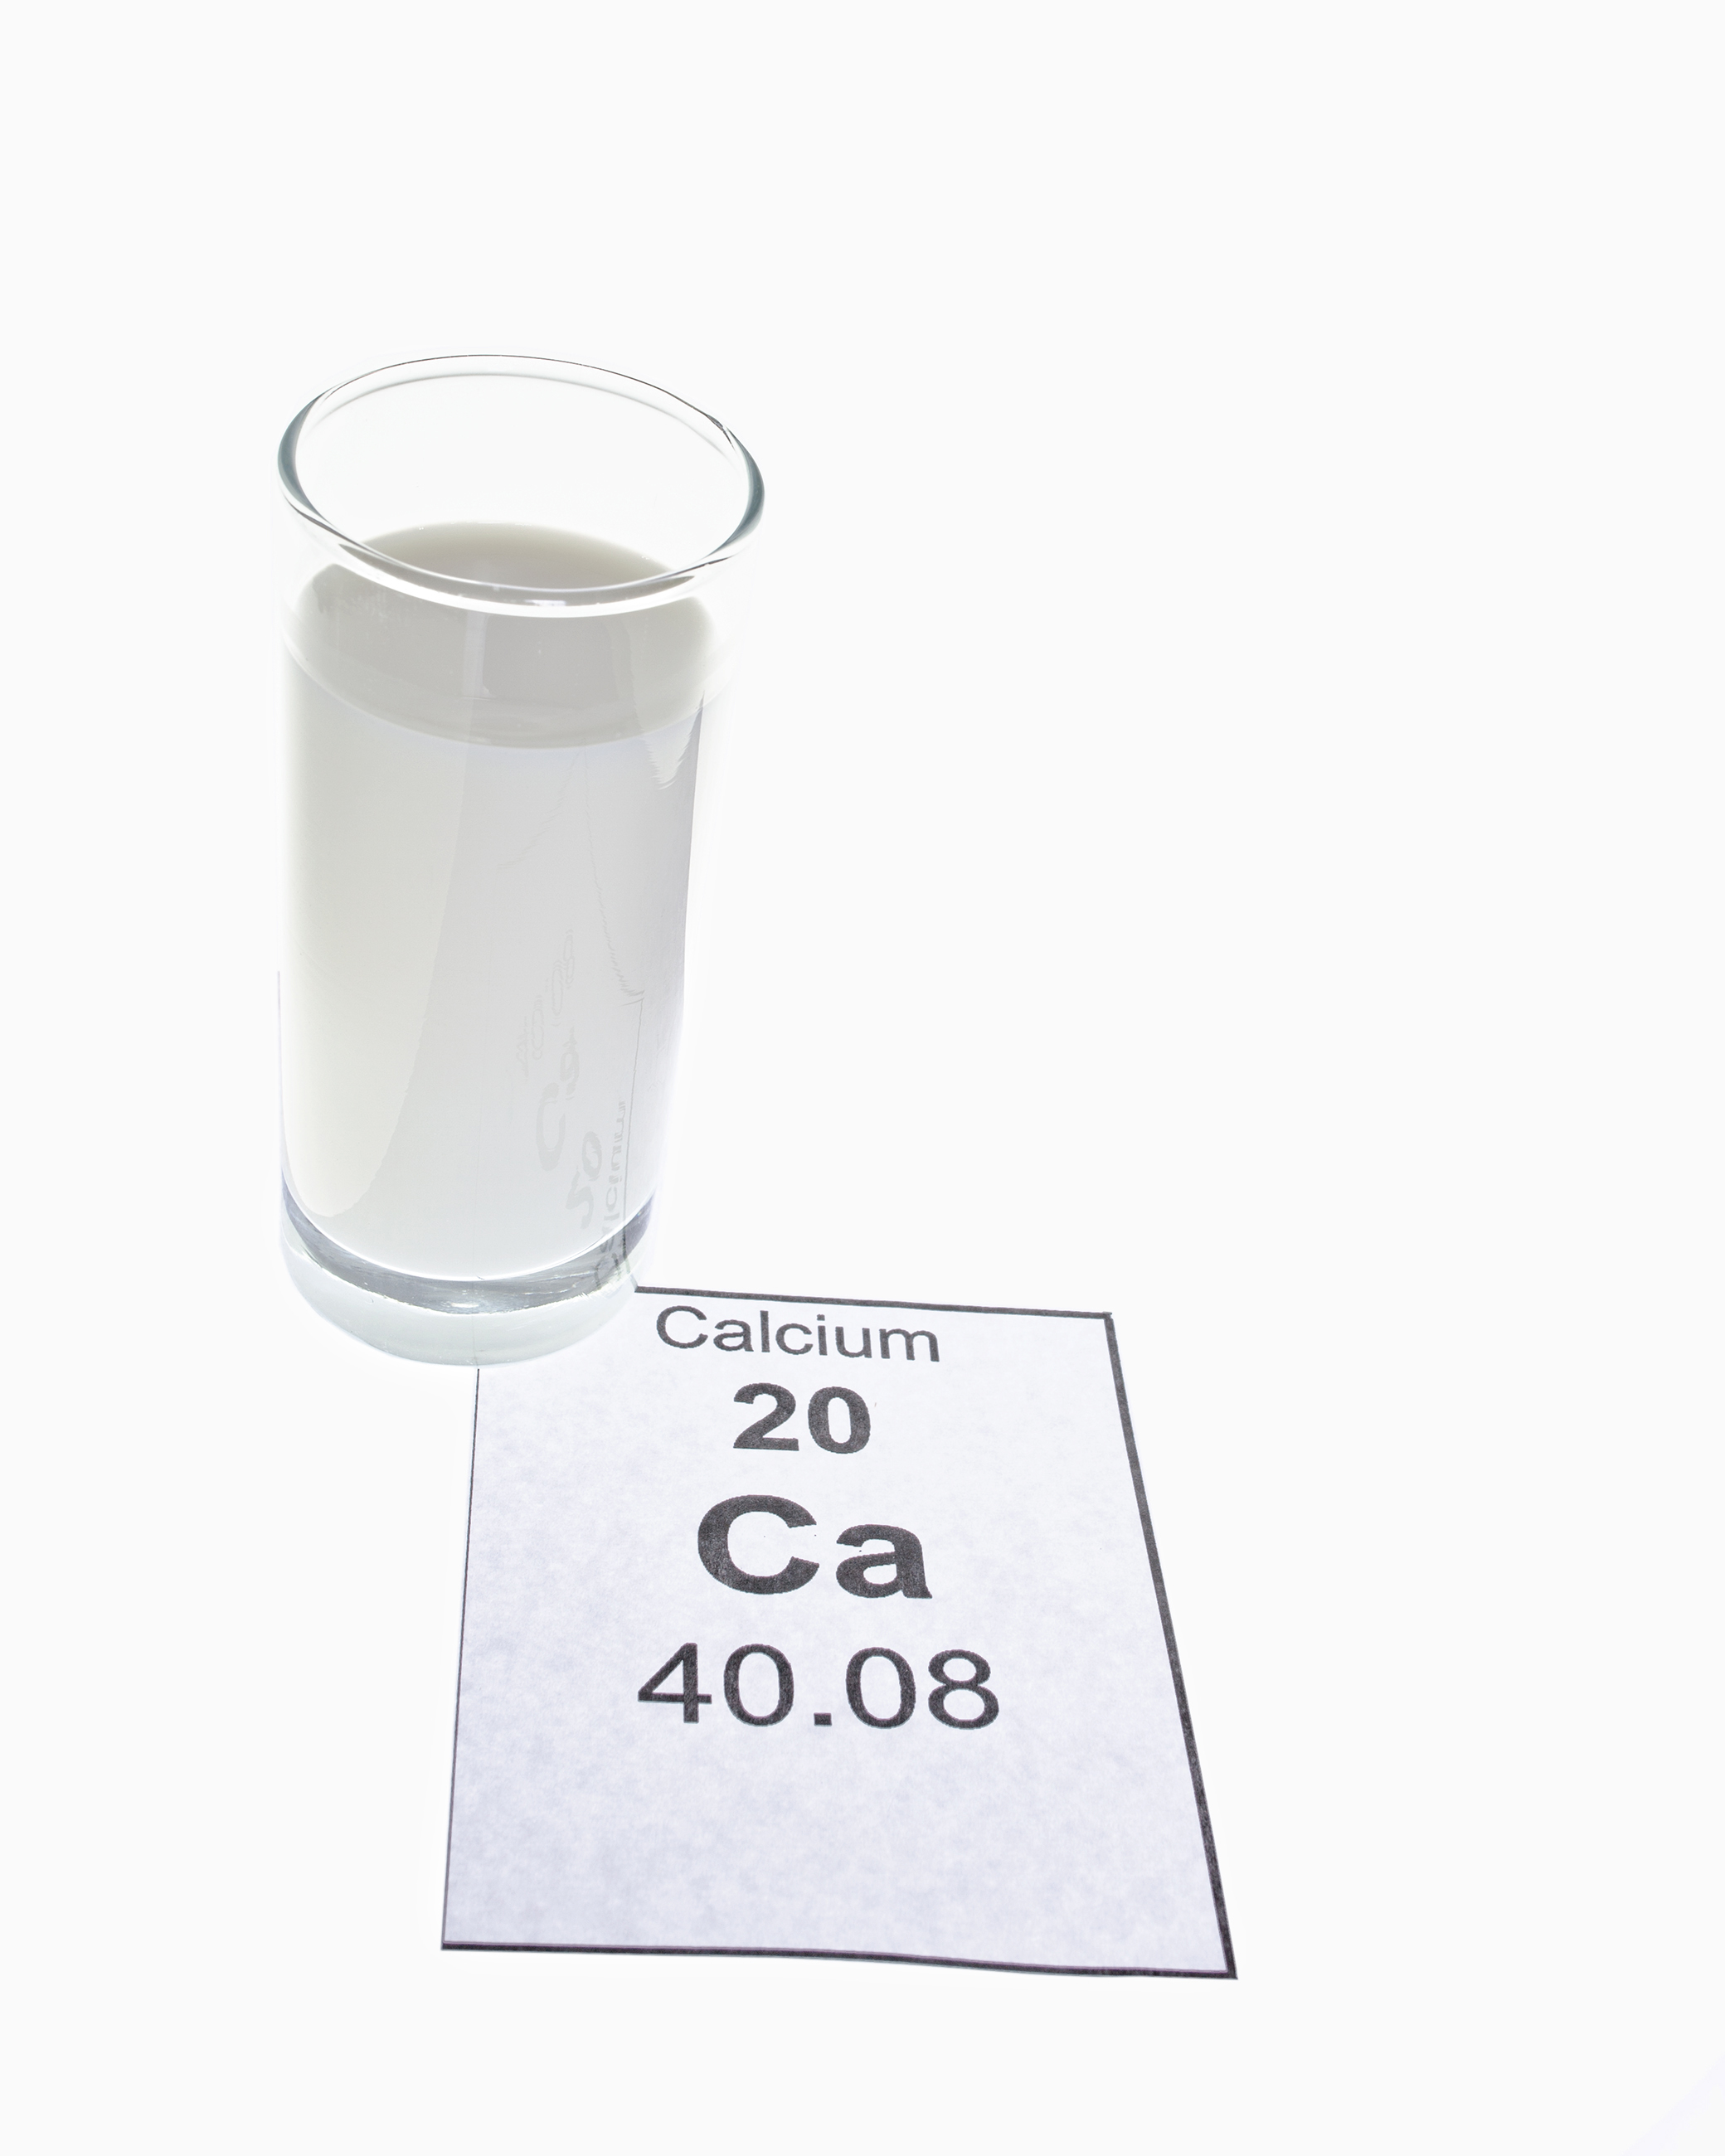 Calcium photo